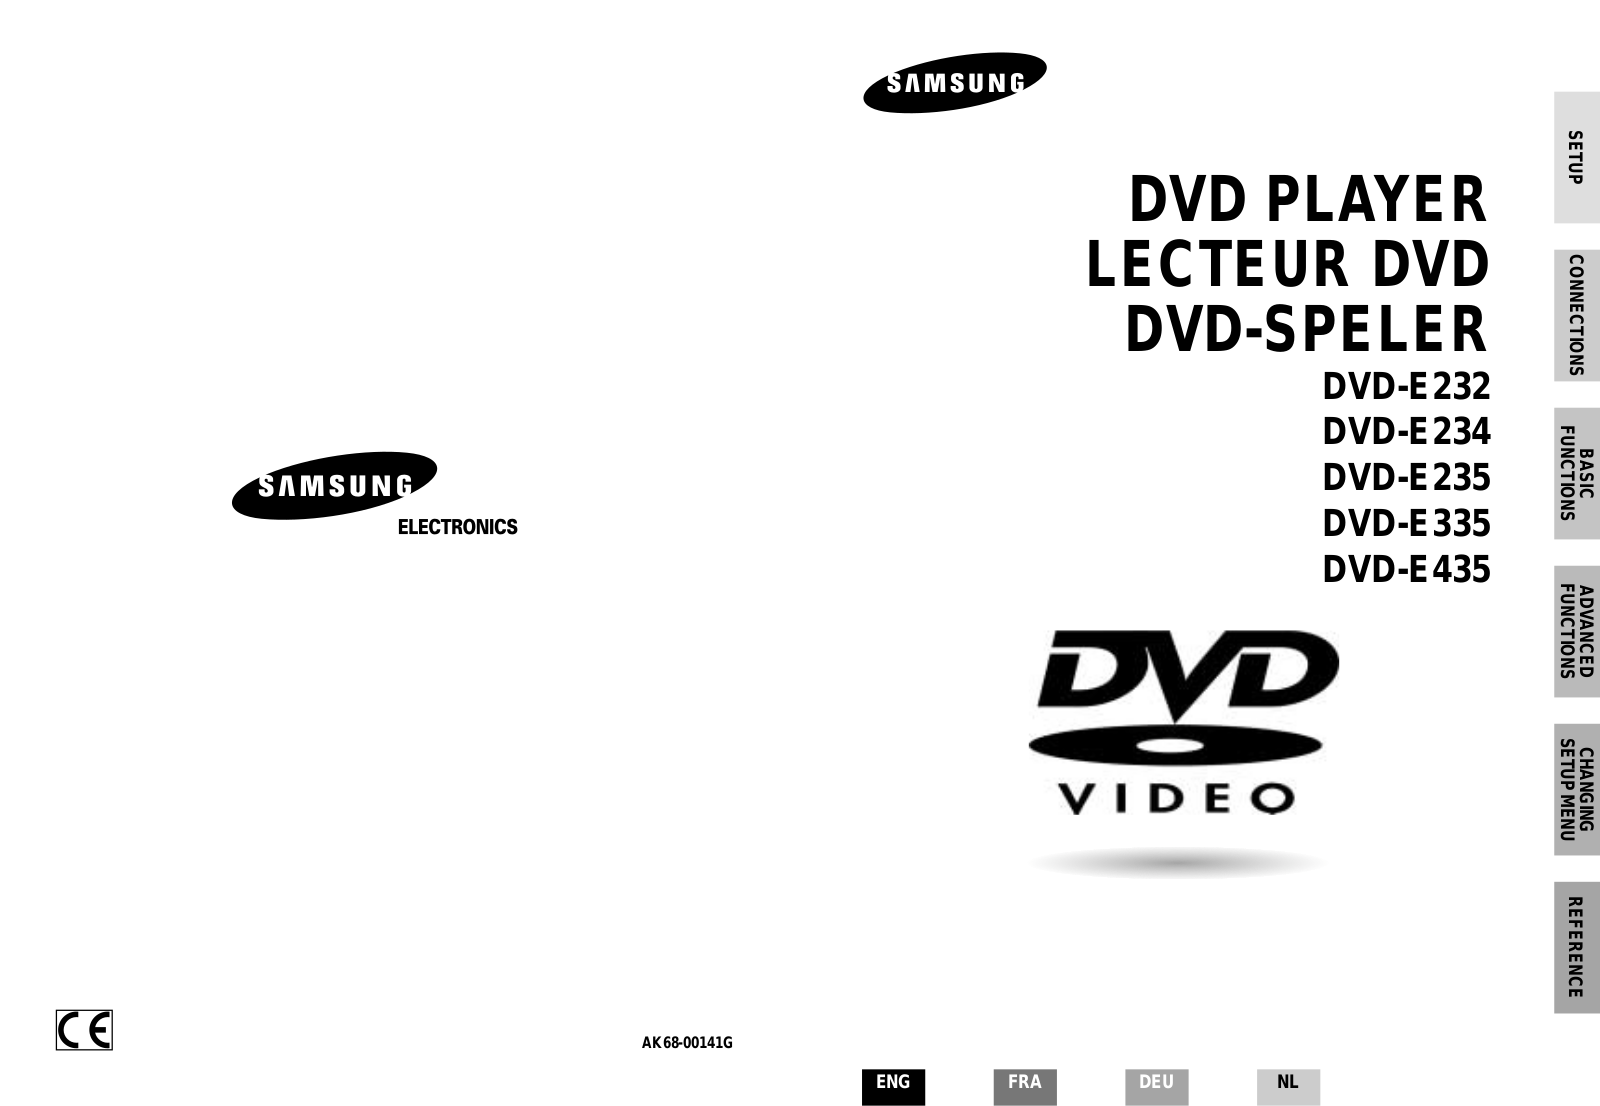 SAMSUNG DVD-E435, DVD-E335, DVD-E234, DVD-E232, DVD-E235 User Manual